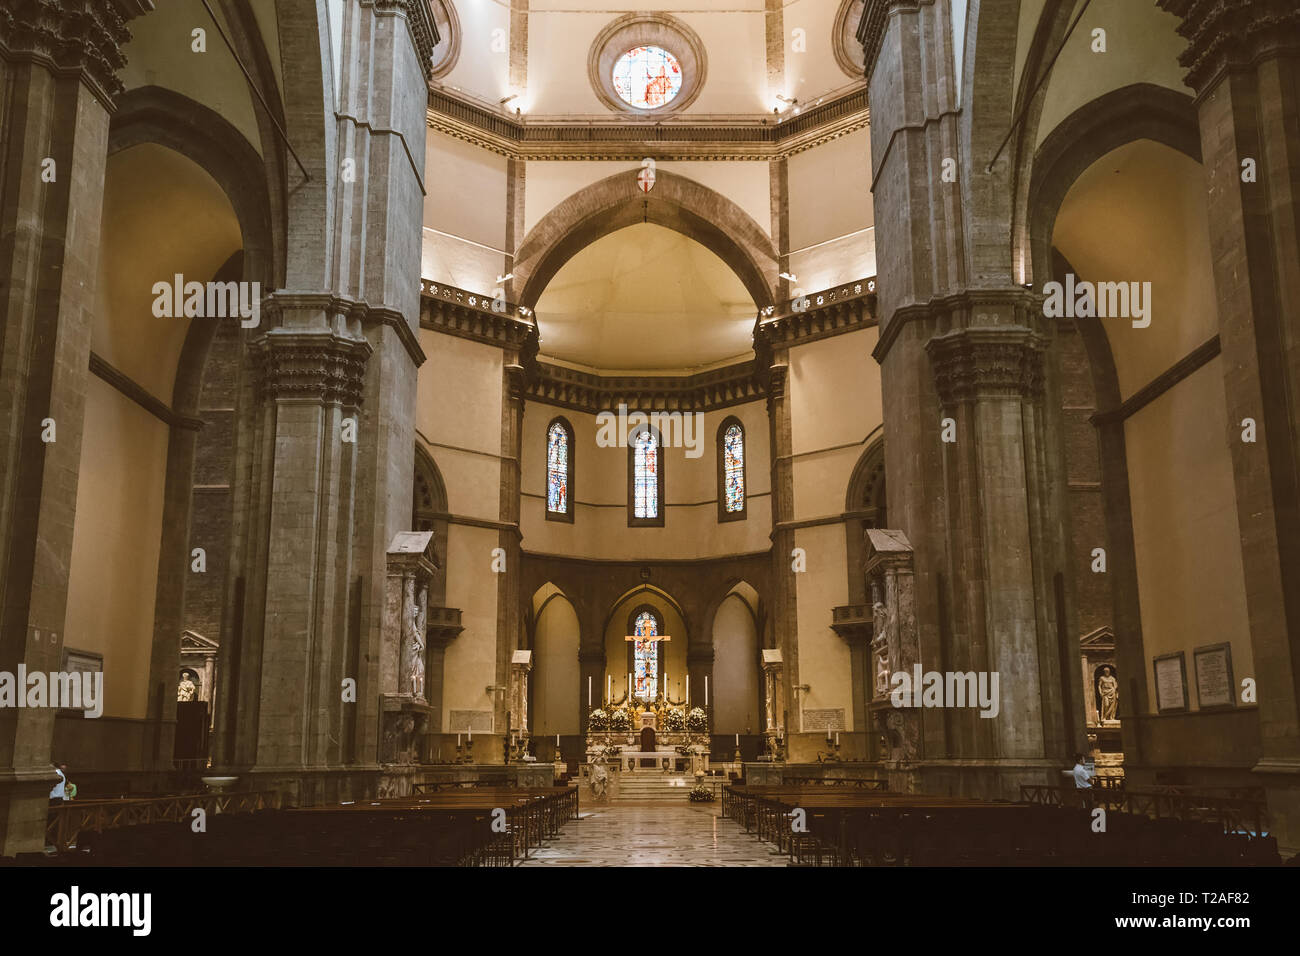 Firenze, Italia - 24 Giugno 2018: vista panoramica dell'interno della Cattedrale di Santa Maria del Fiore (Duomo di Santa Maria del Fiore) è la cath Foto Stock